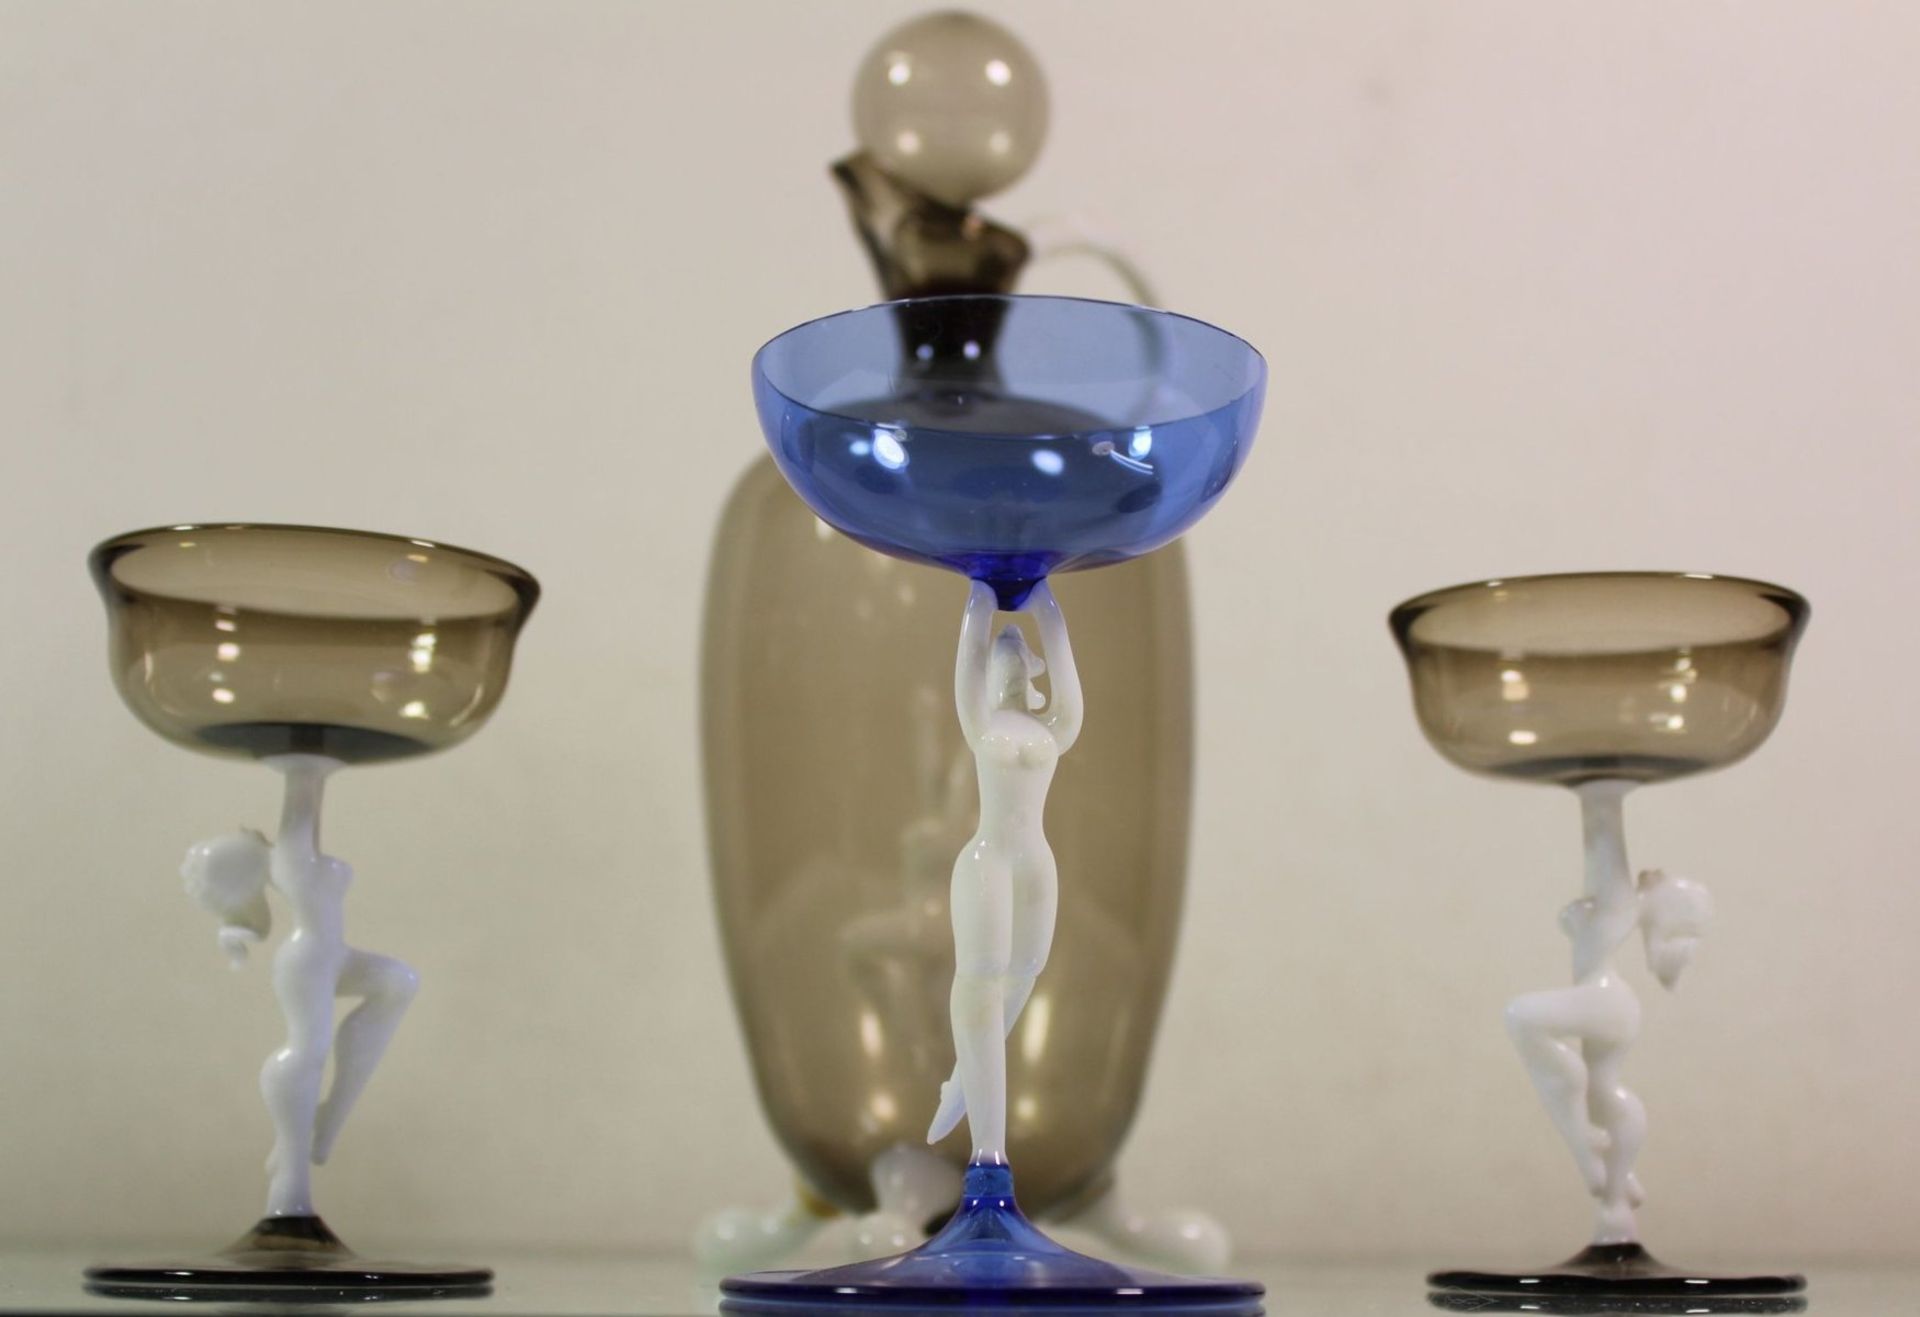 Karaffe mit 2 passenden Gläsern sowie eines anbei, wohl Lauscha Bimini, Karaffe 1x Fuss geklebt, - Bild 2 aus 5